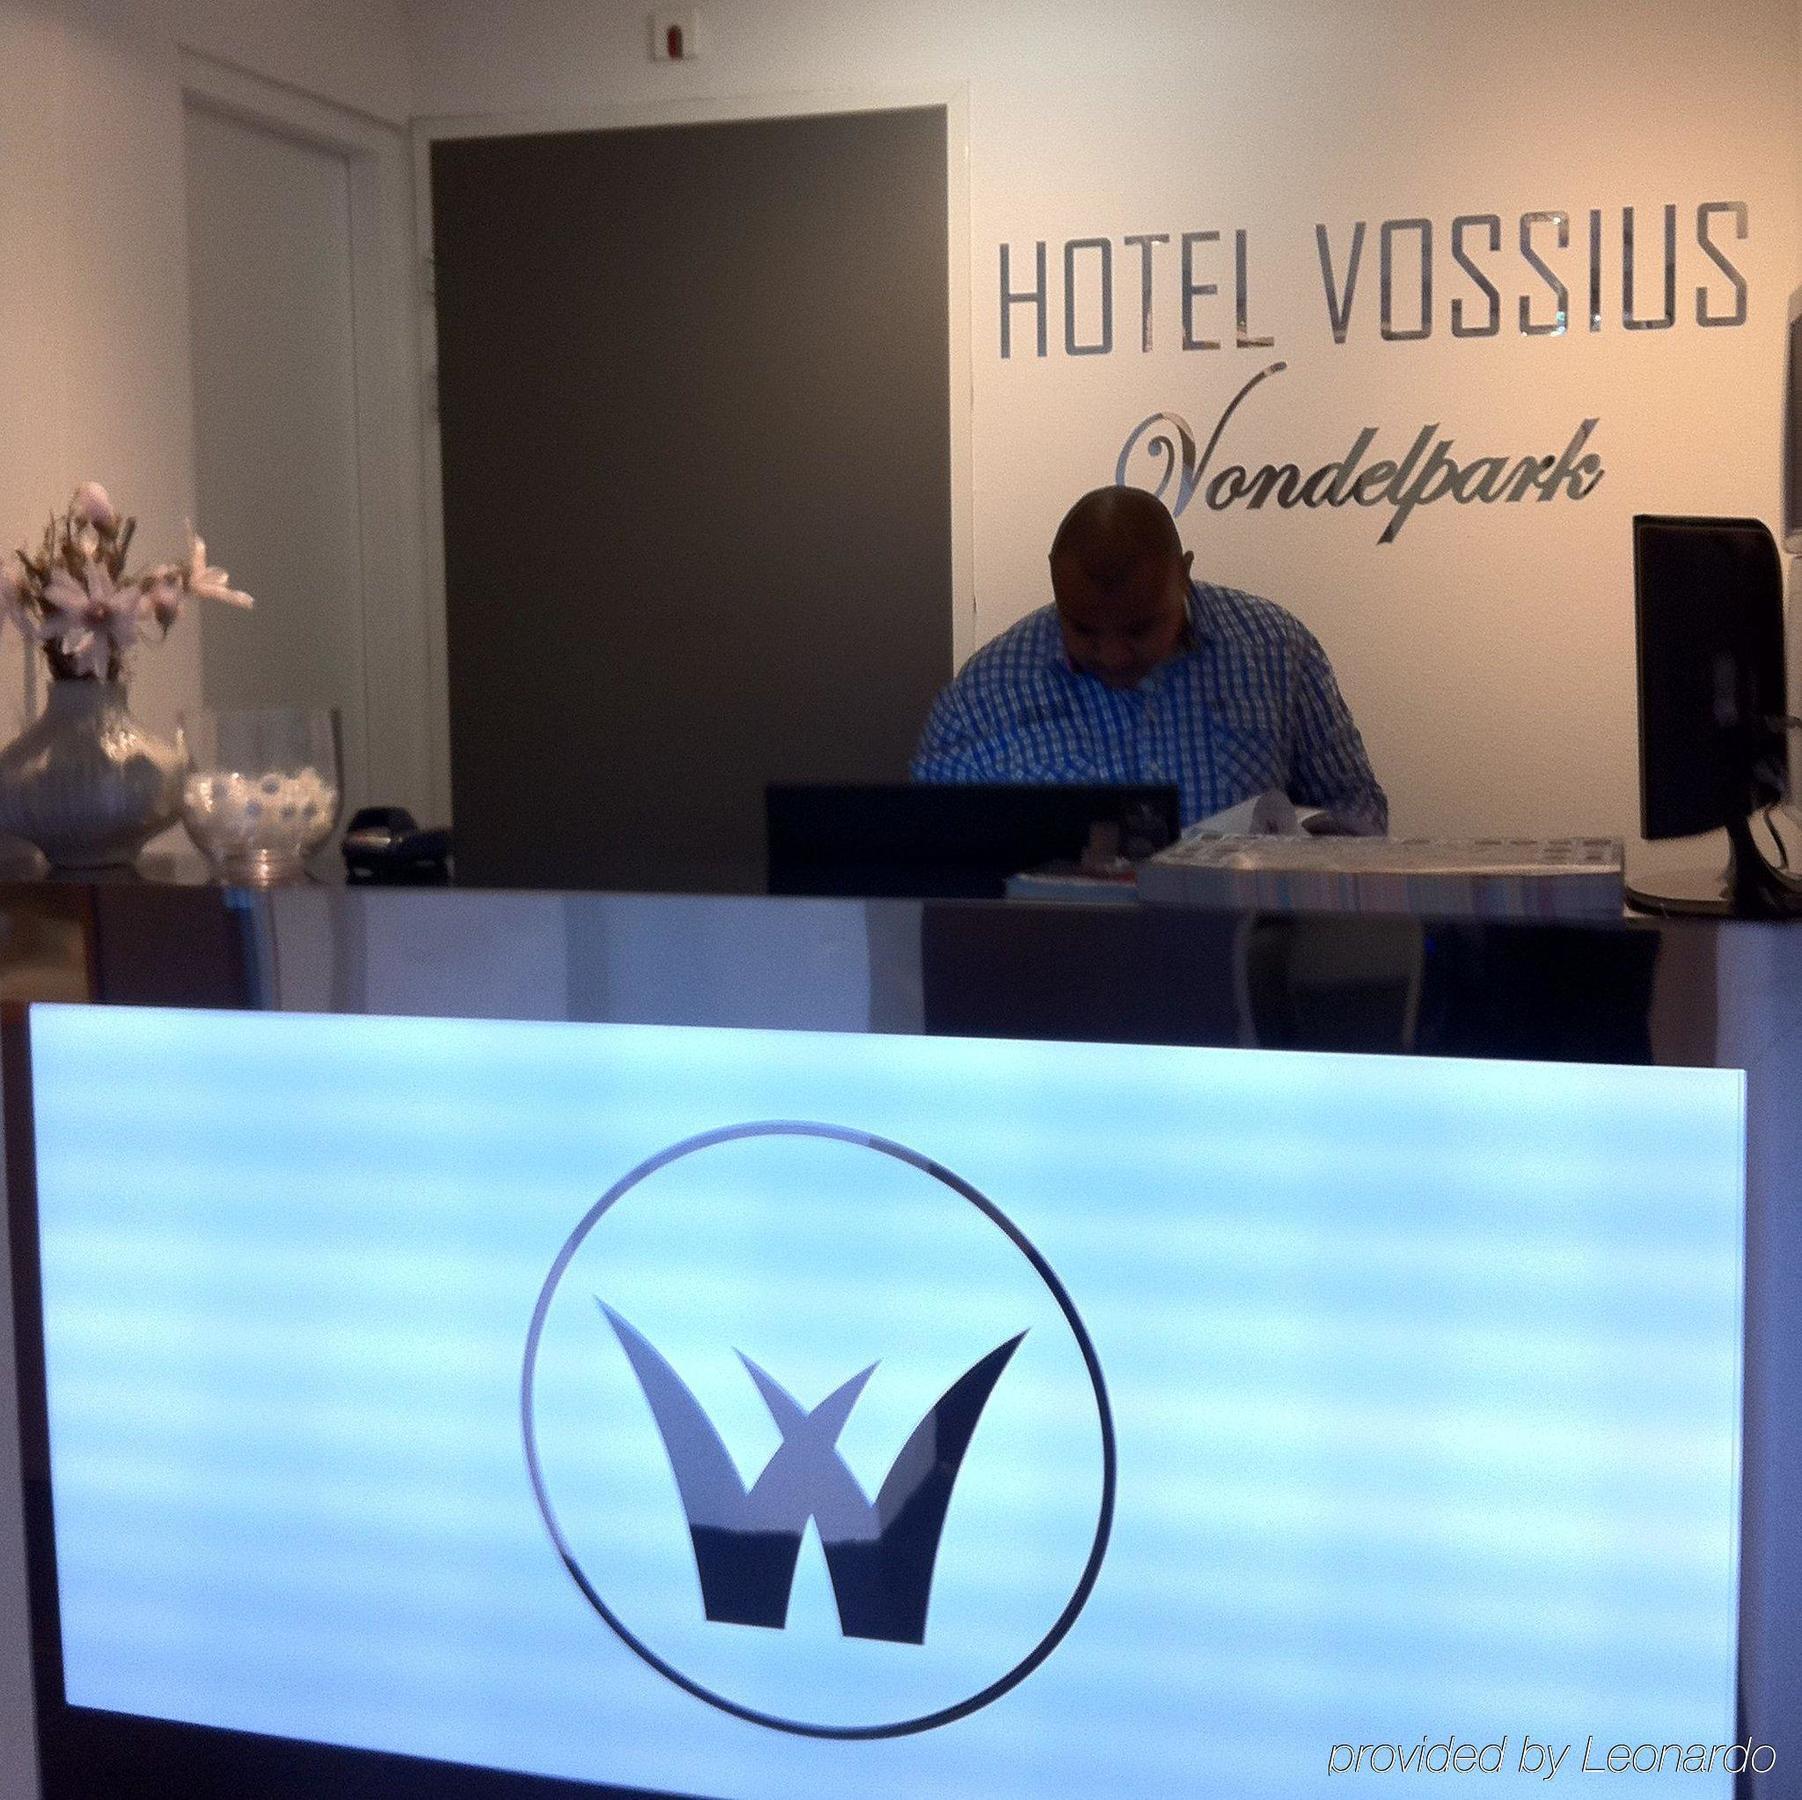 Hotel Vossius Vondelpark Амстердам Интерьер фото